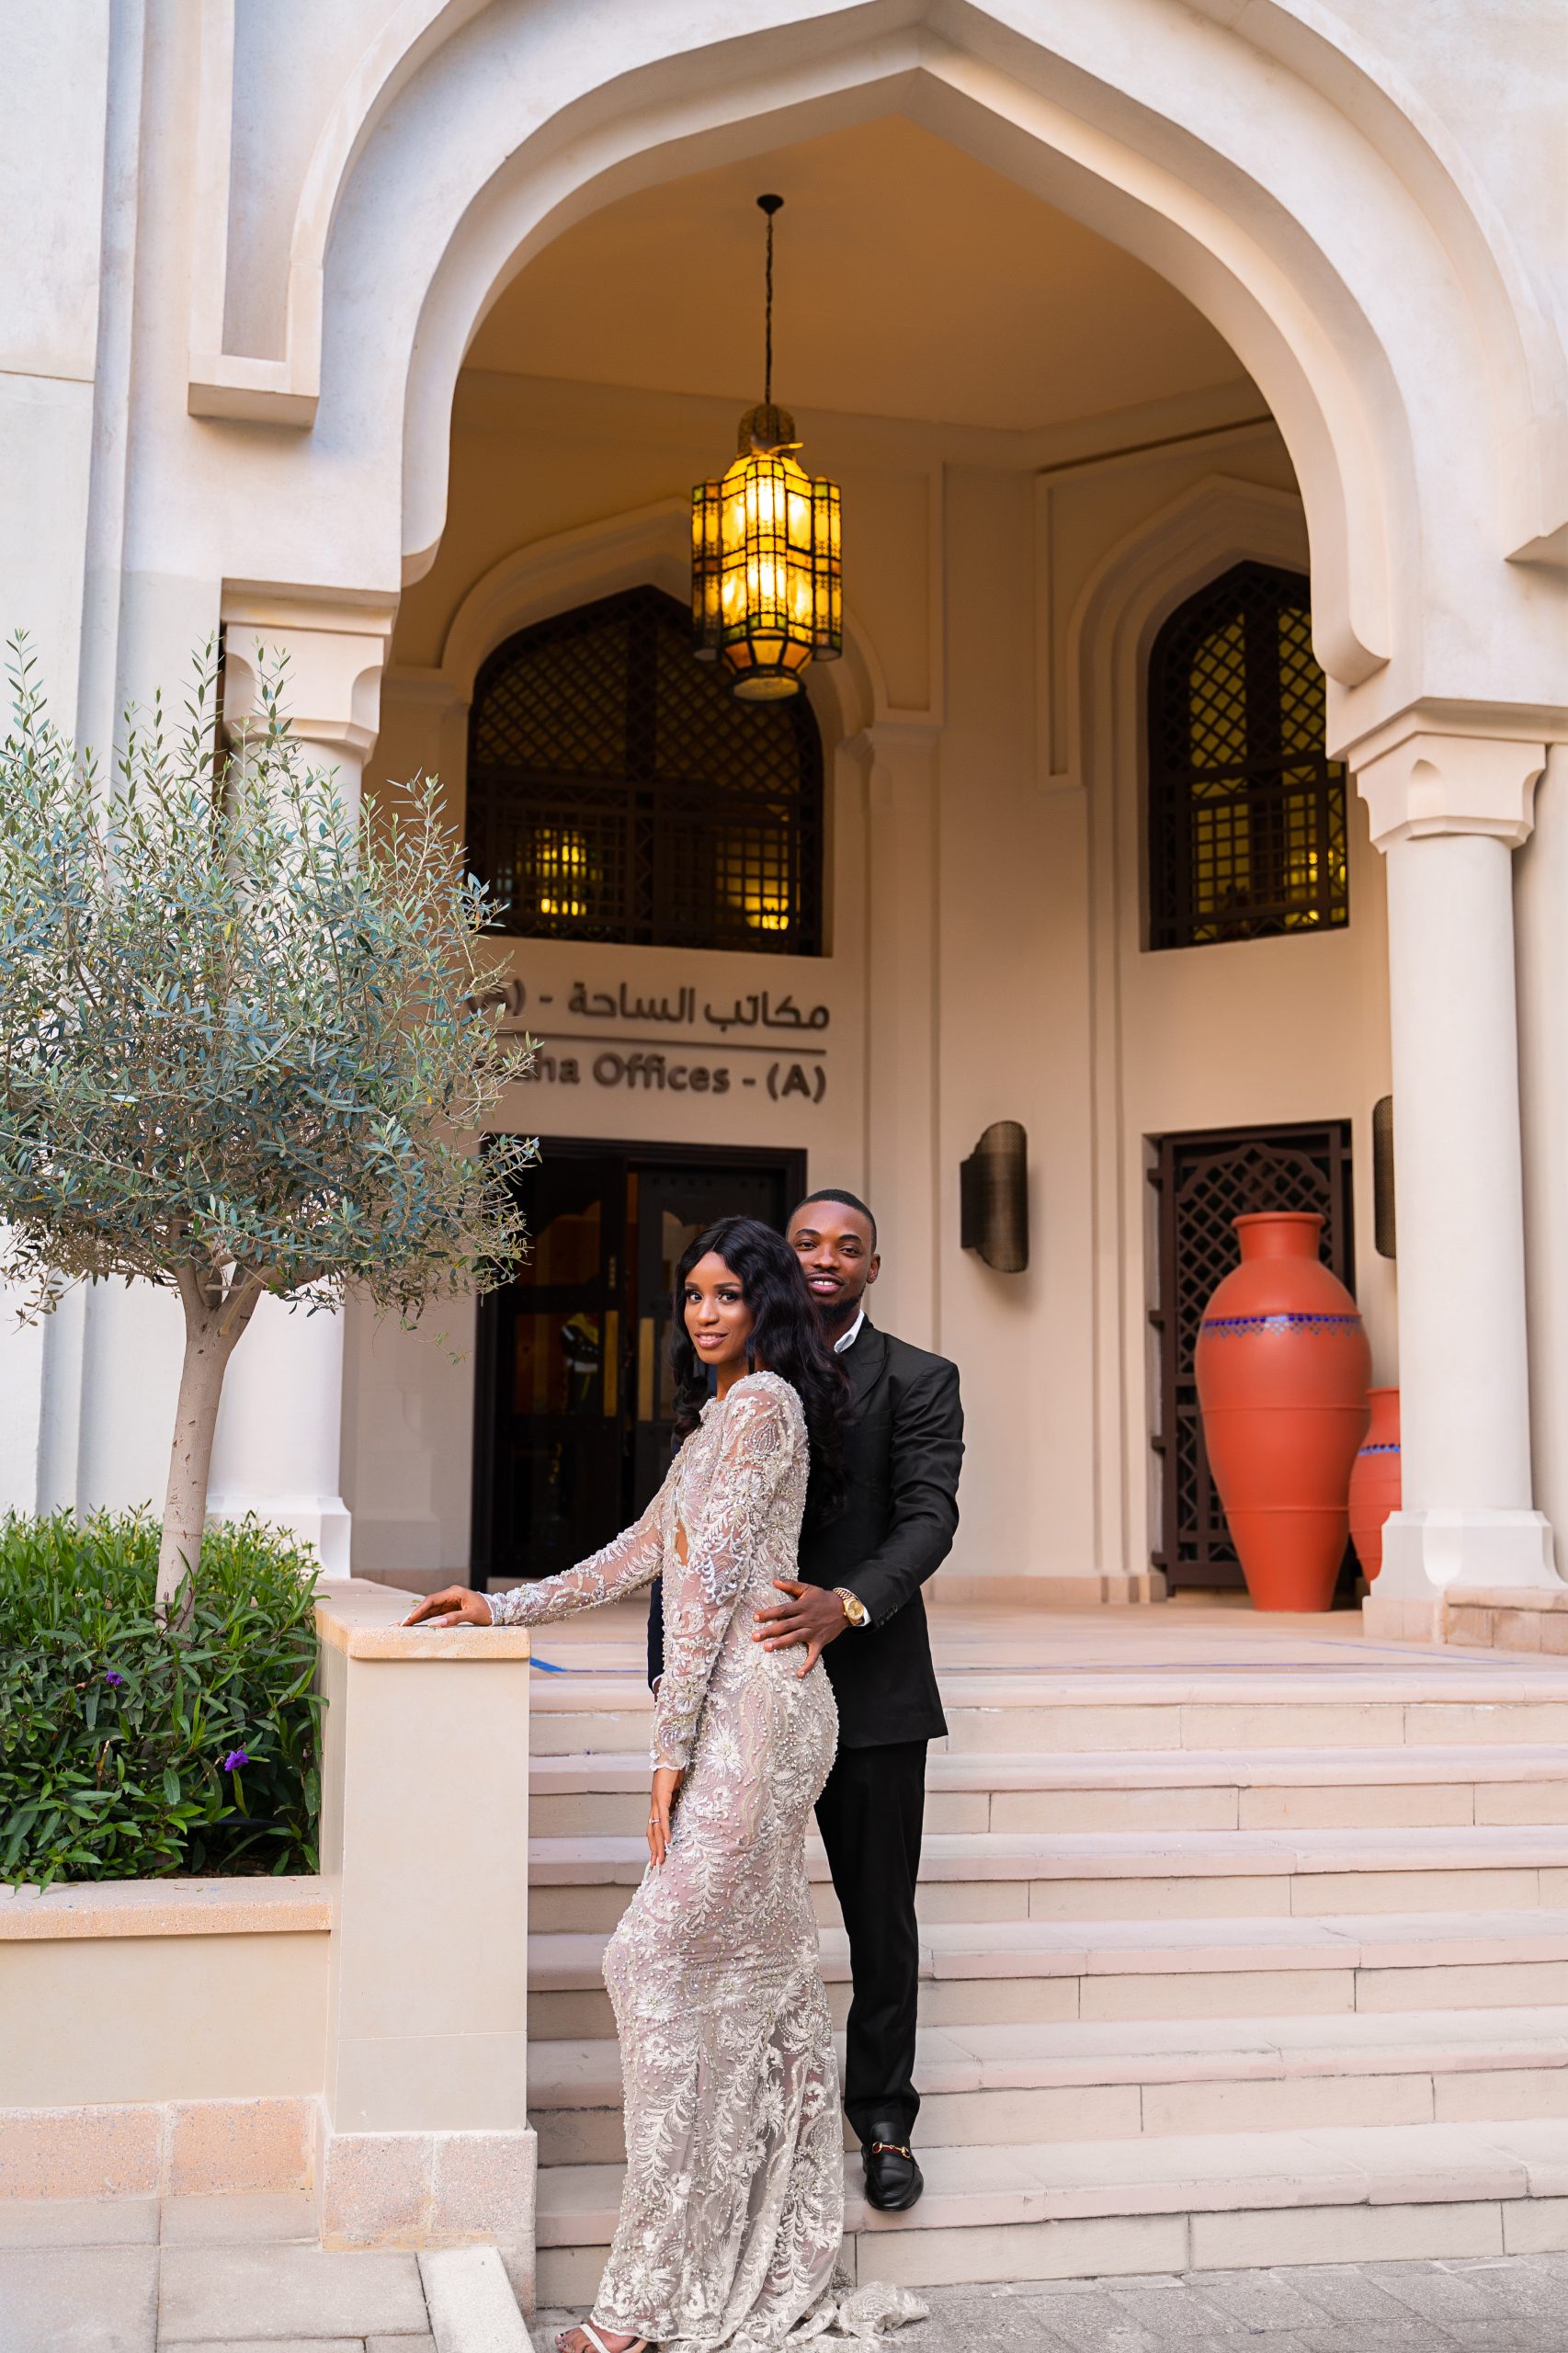 Свадебная фотосессия в Дубае